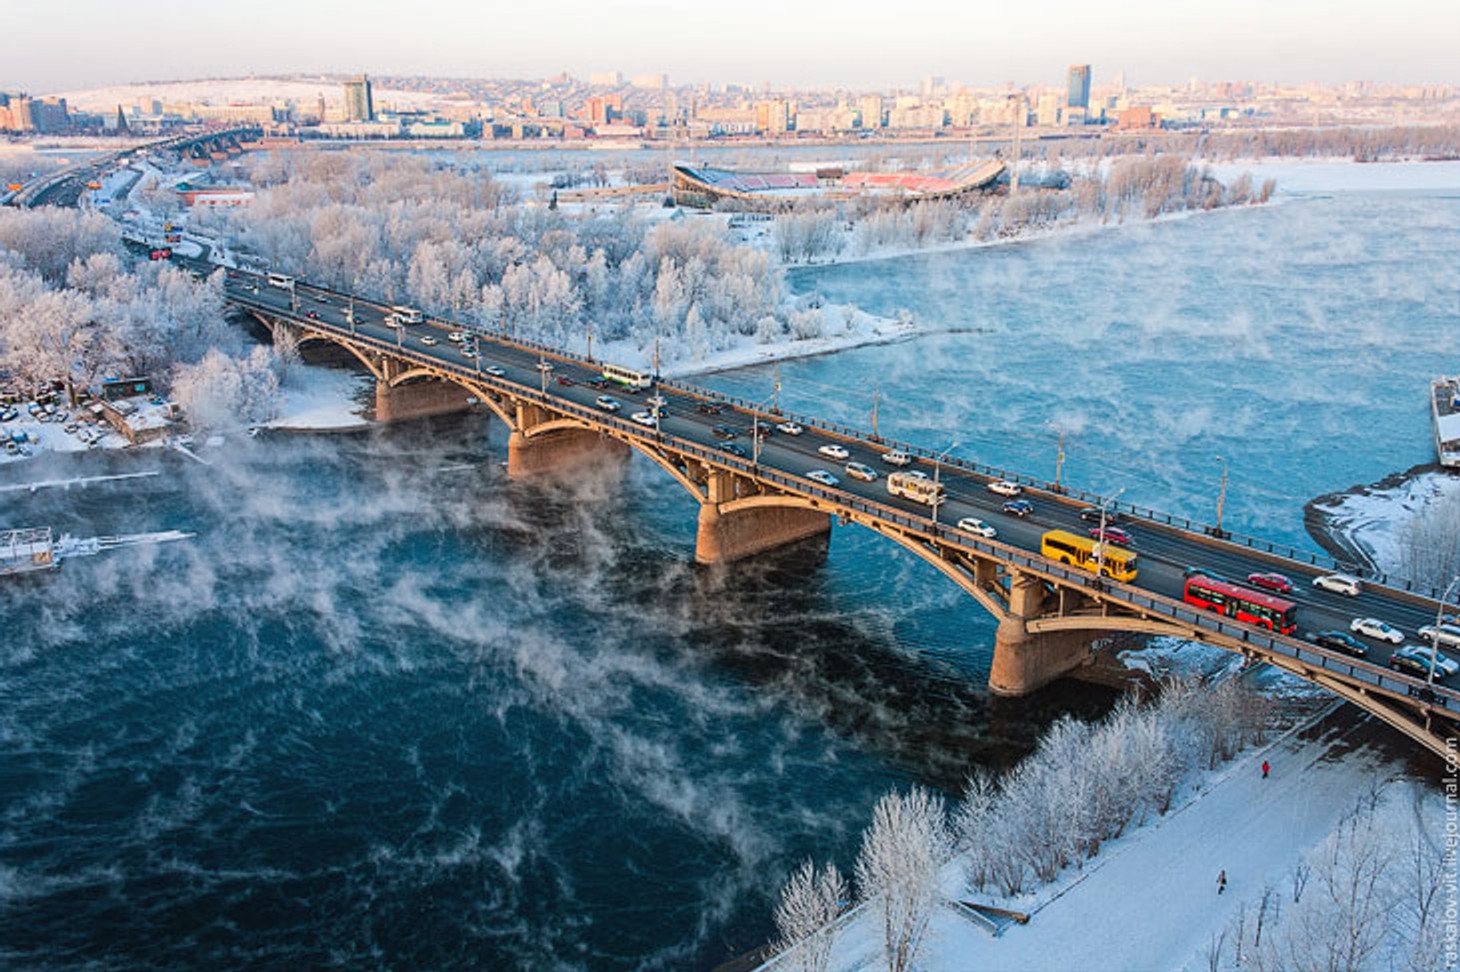 В соцсетях появился ролик якобы от «Газпрома» о холодной зиме в Европе. Но показали в нем негазифицированный Красноярск